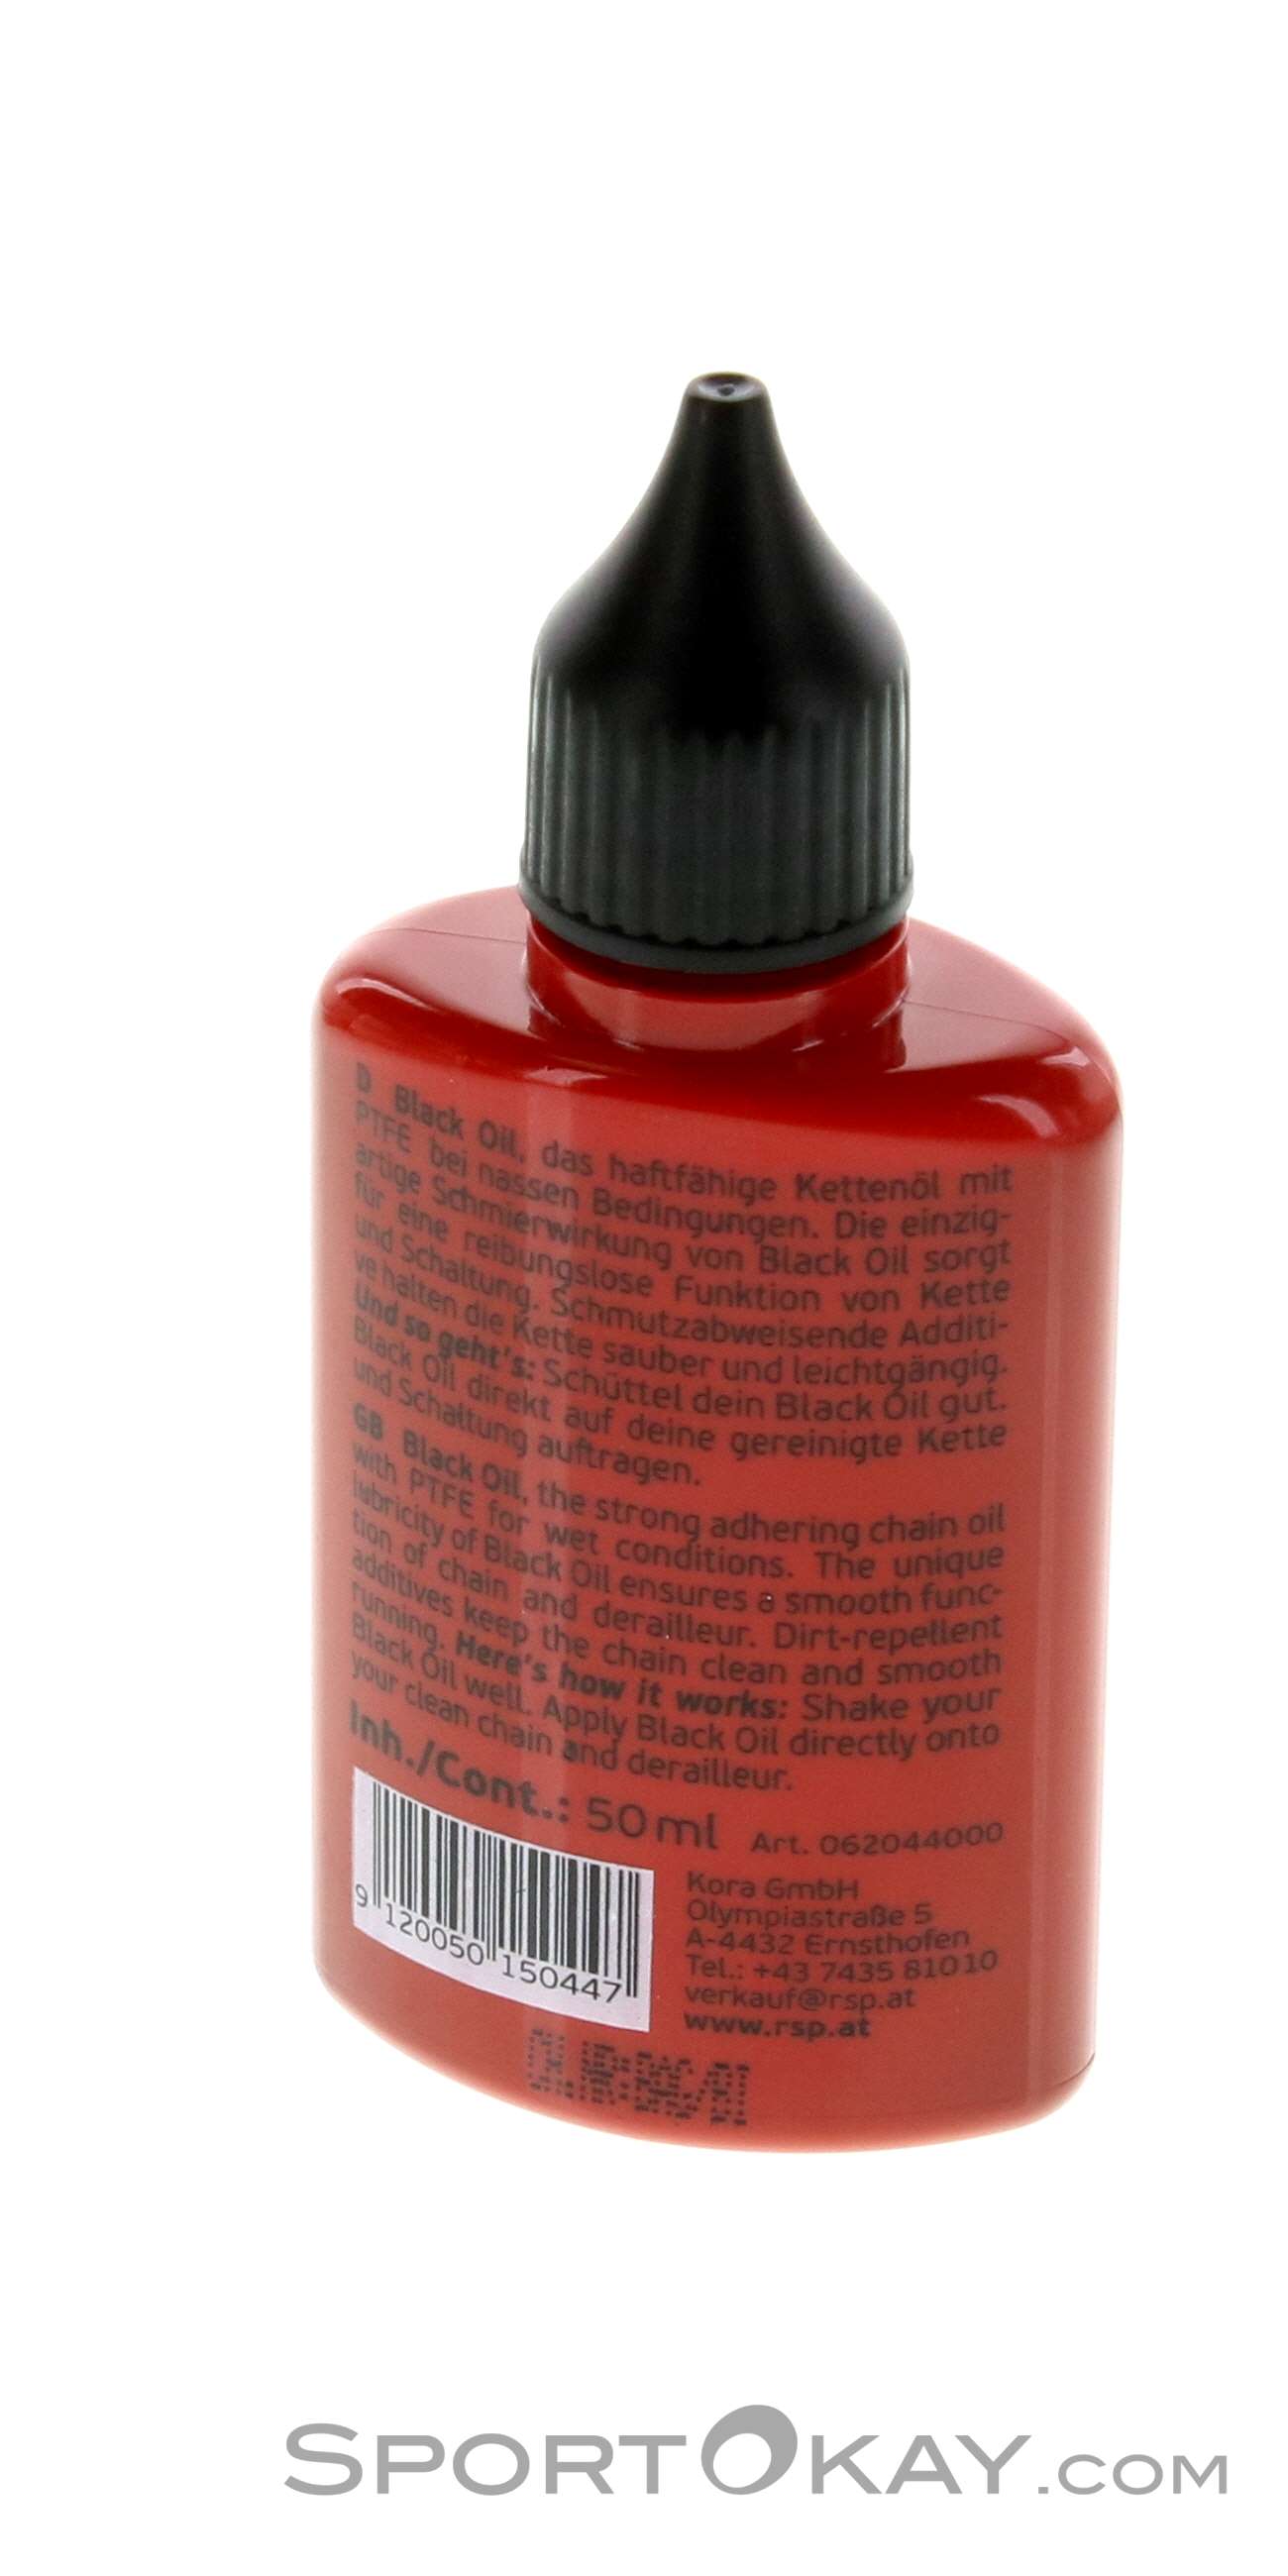 TKB Lip Liquid - Pigment Red